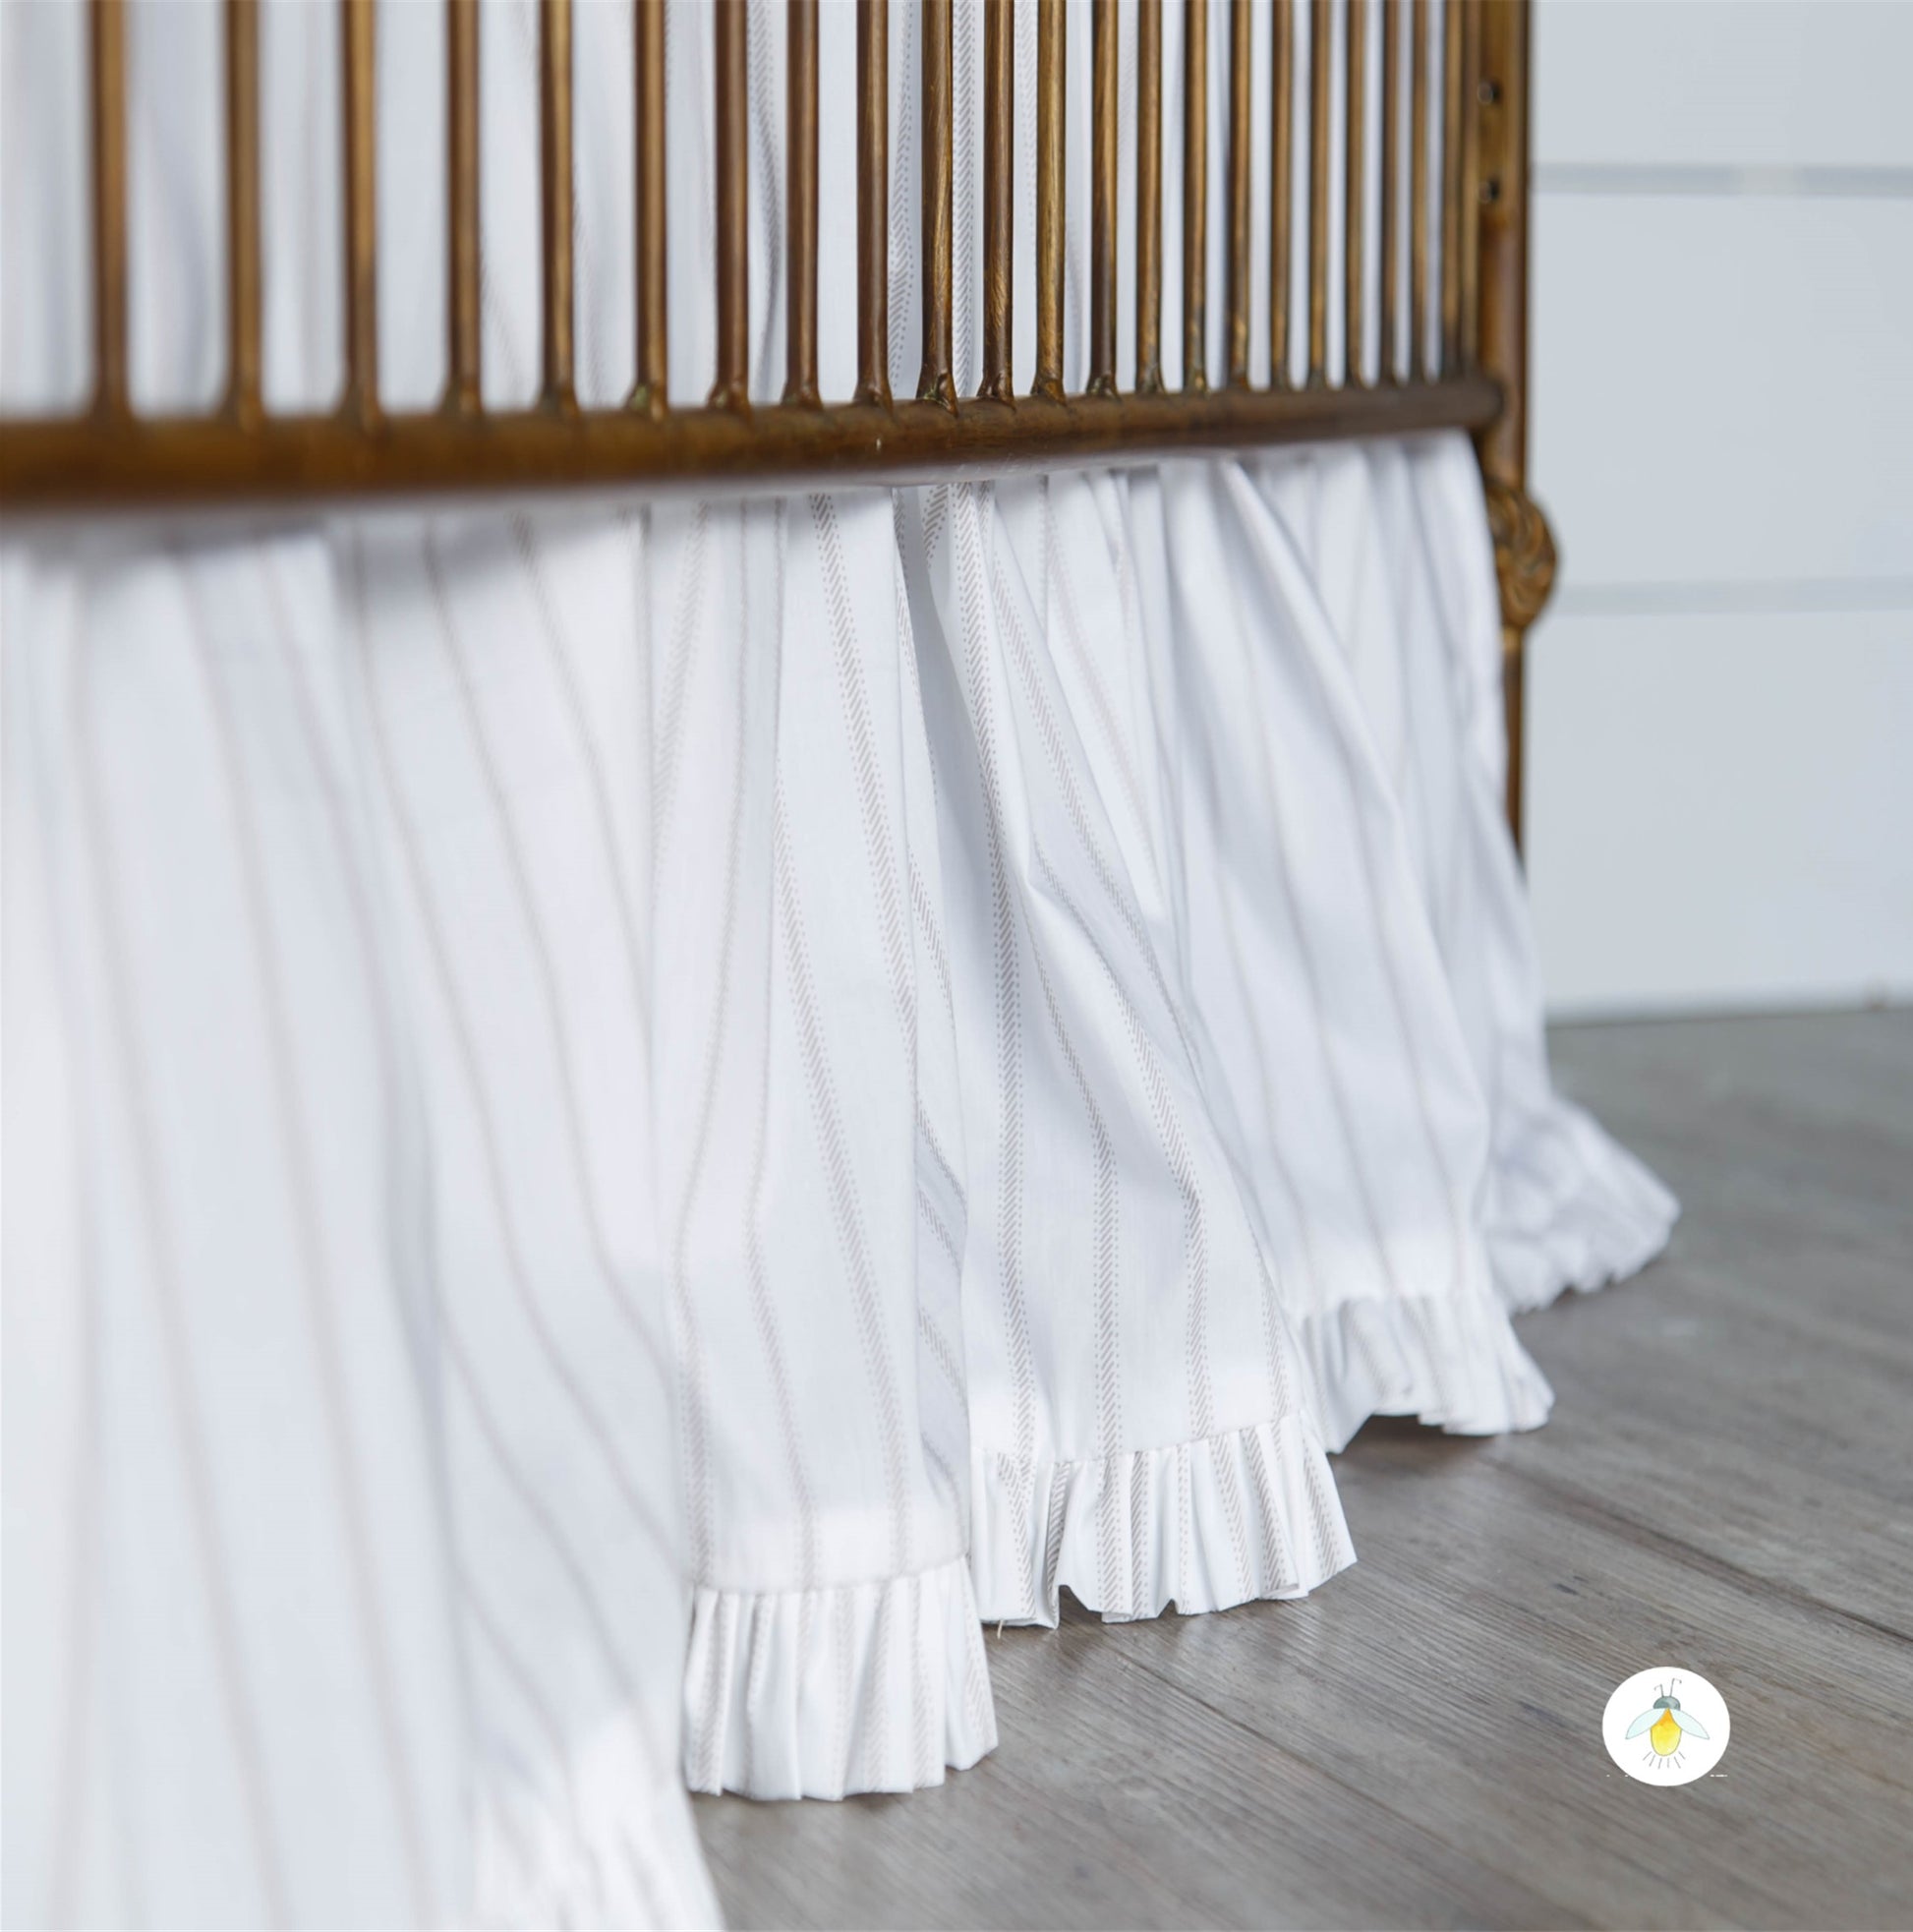 Fabric : TICKING STRIPES – Fireflies Nursery Linens